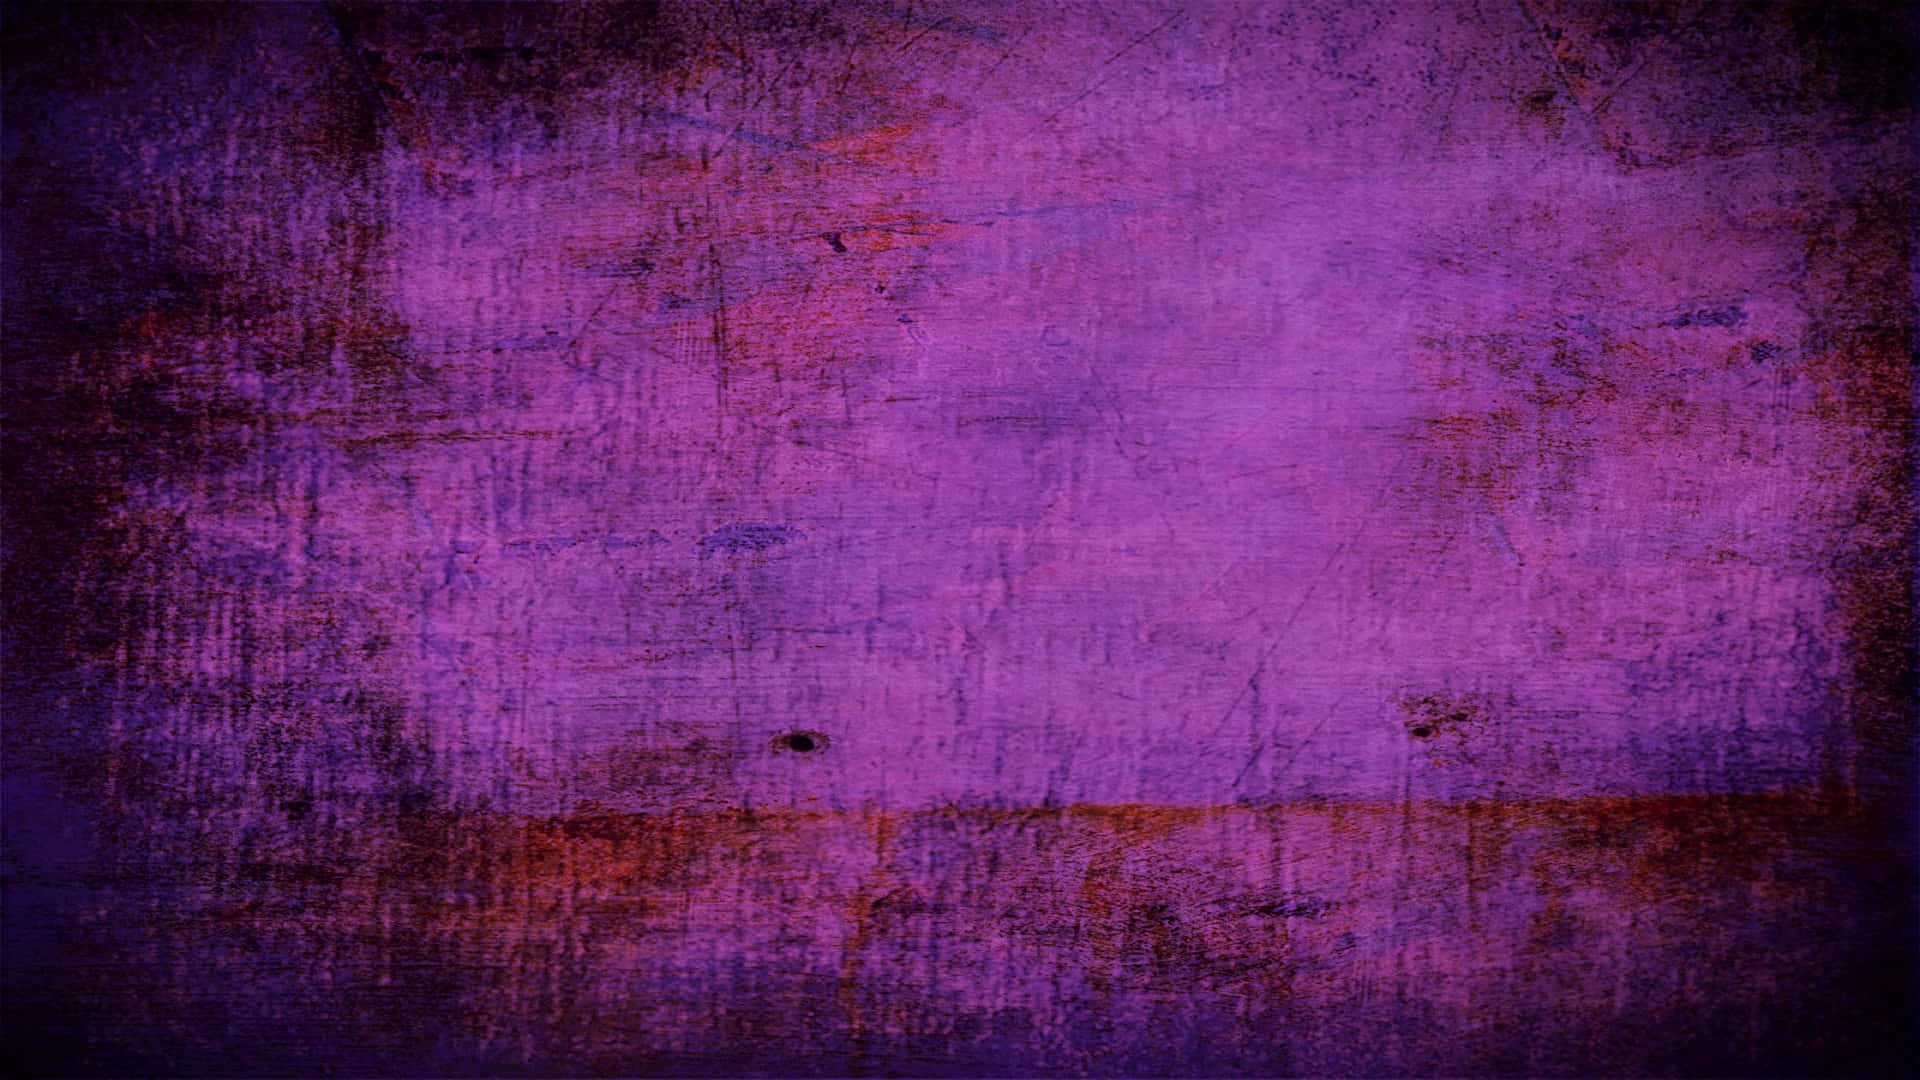 Rich purple textured background